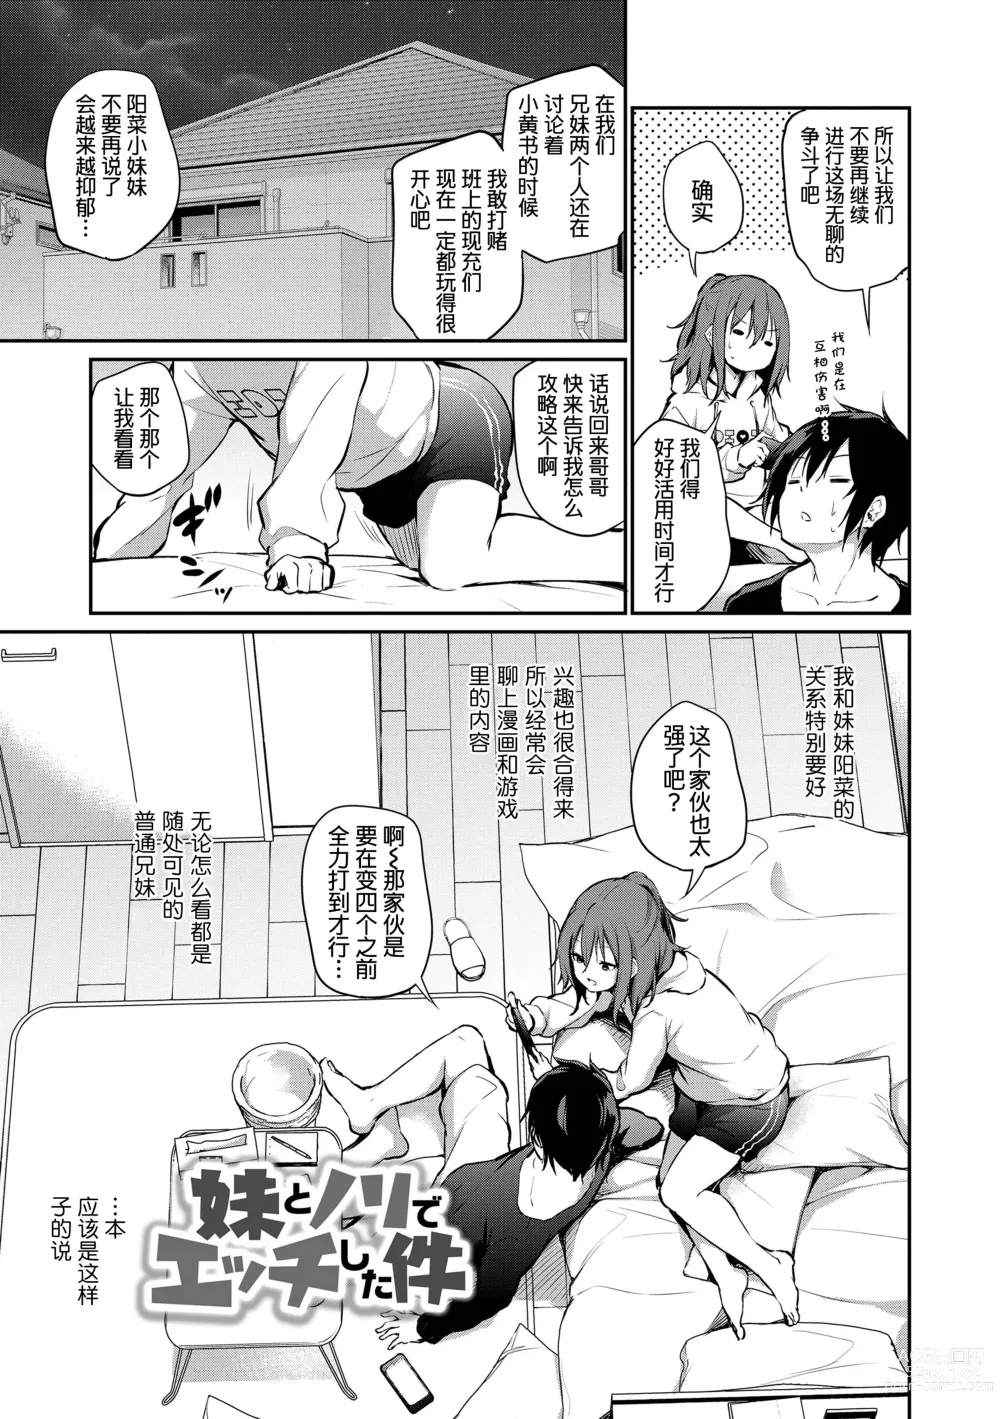 Page 7 of manga Imouto TRIP (decensored)